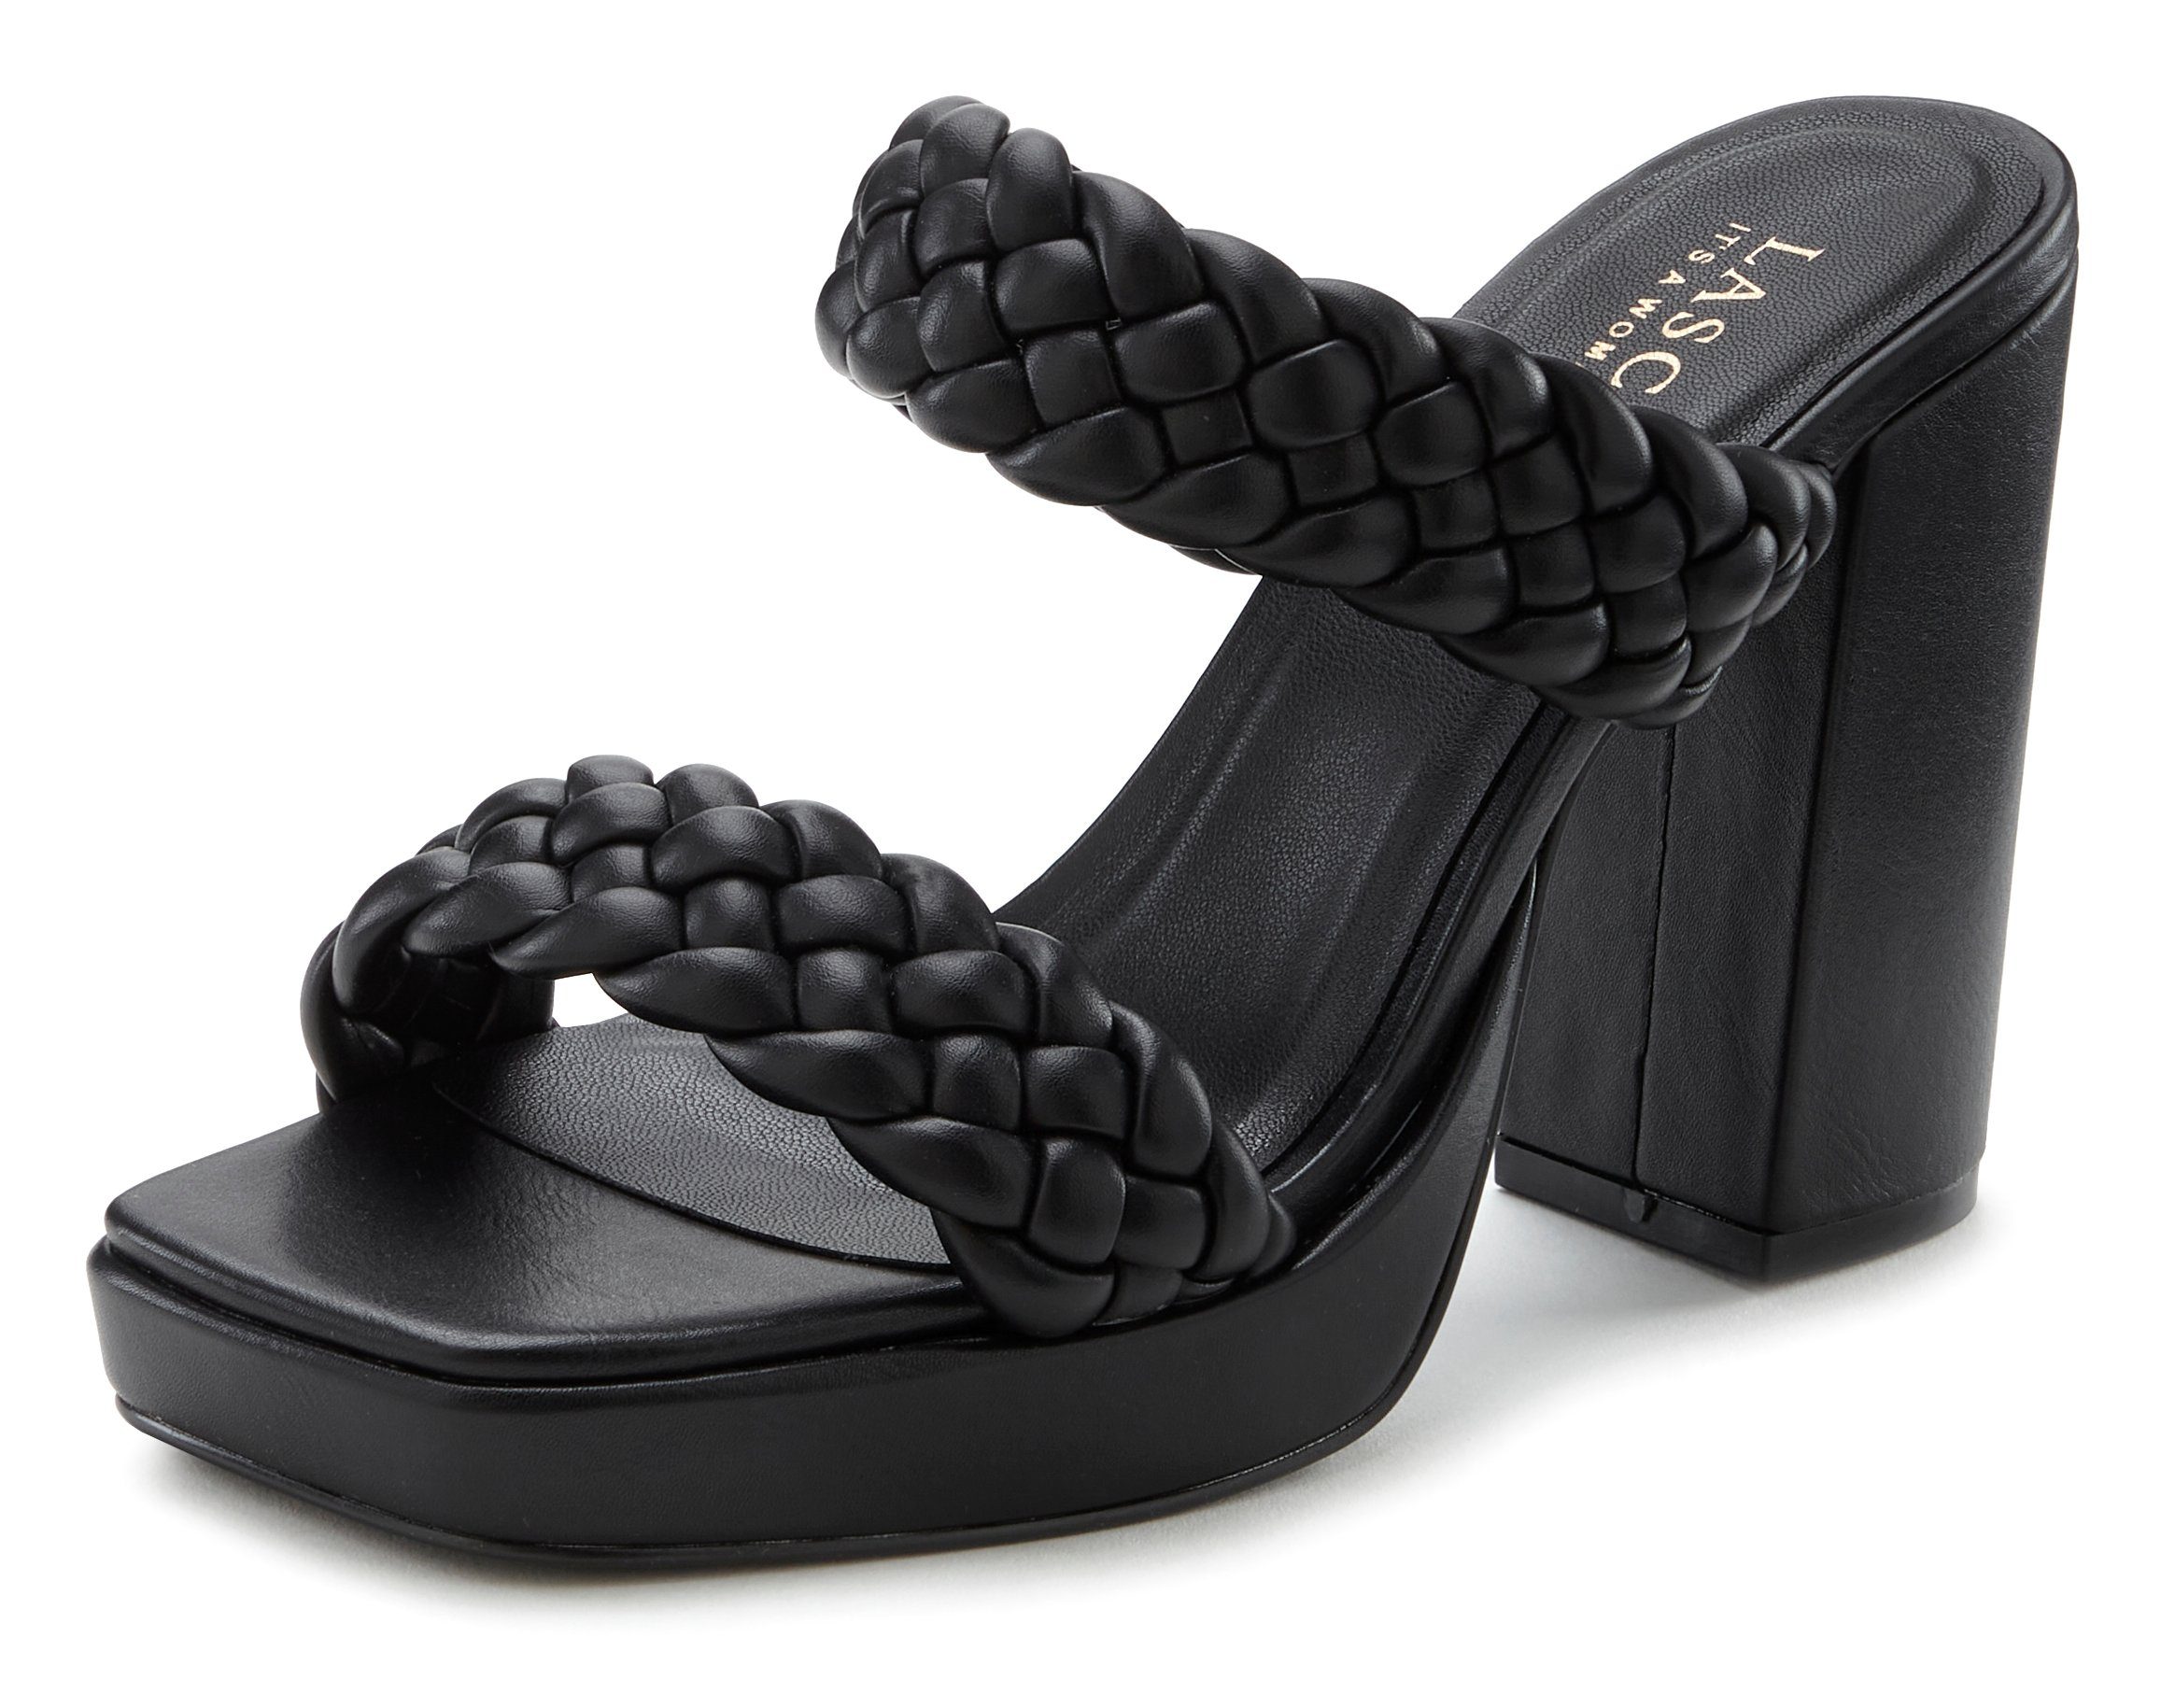 schwarz raffinierte Riemchen LASCANA Flecht-Design im Sandale, offener Pantolette Schuh, Mule,